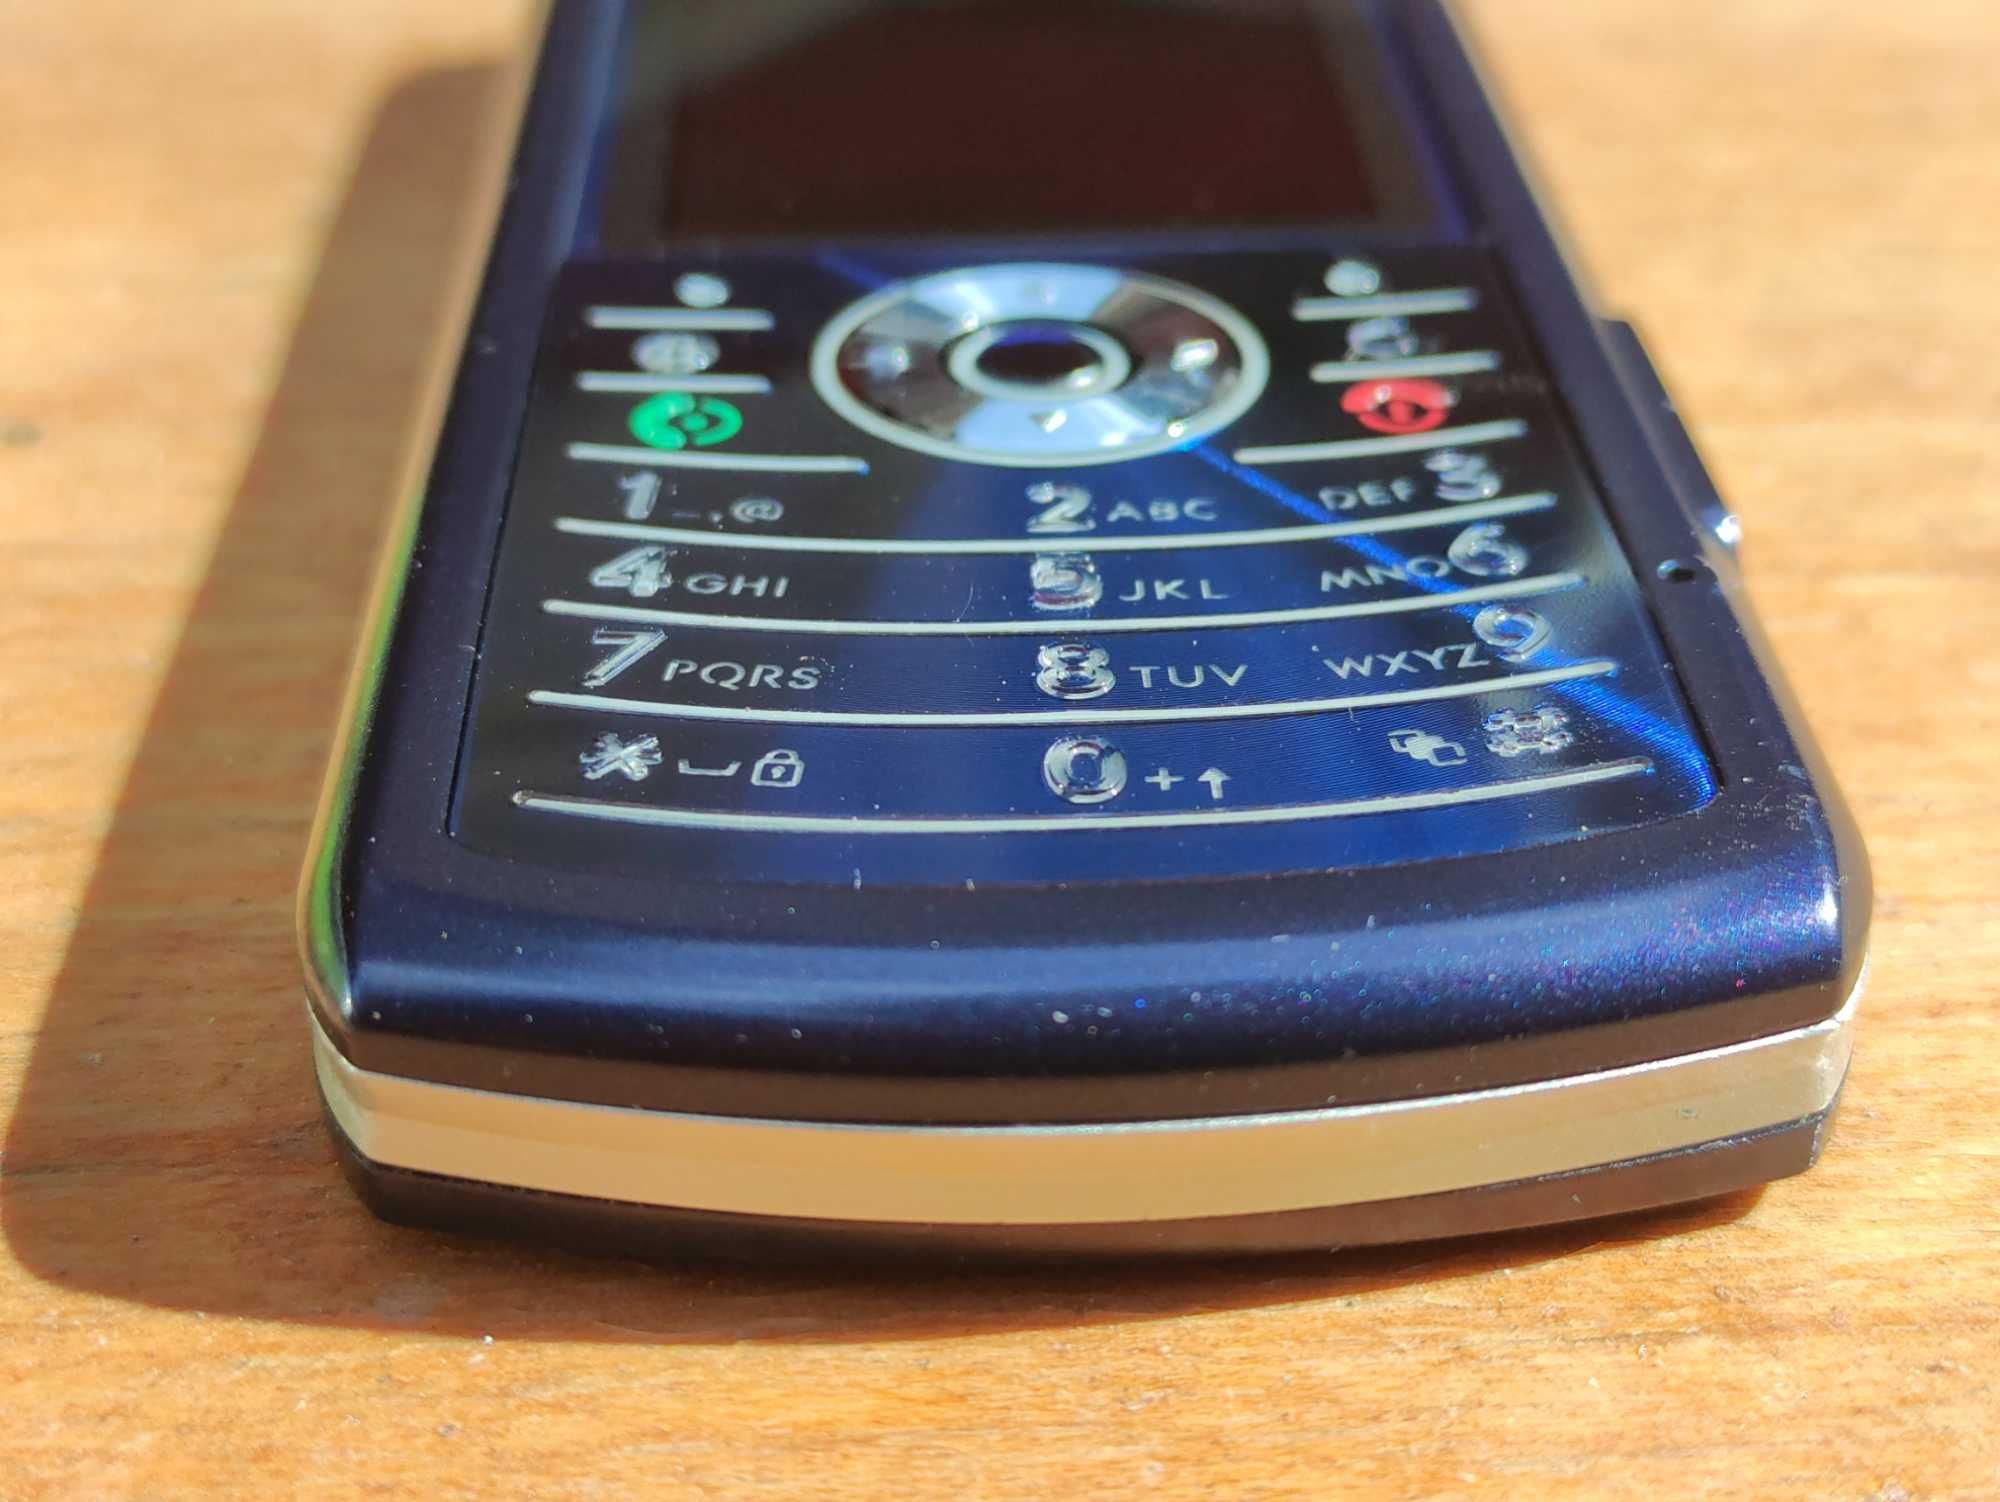 Ретро телефон Motorola L7 идеальный